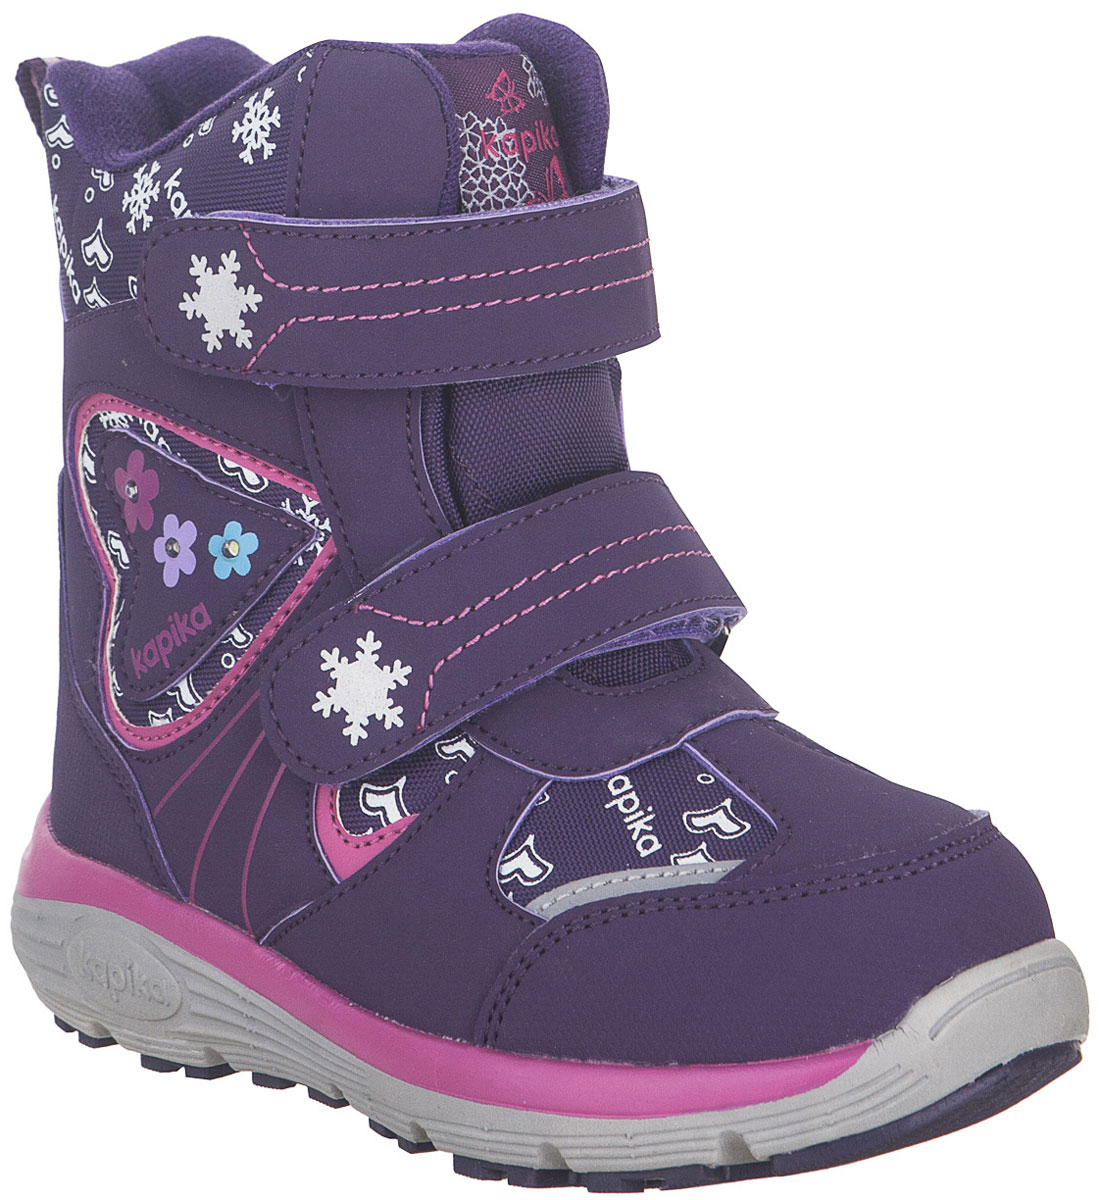 Ботинки для девочки Kapika, цвет: фиолетовый. 42256-2. Размер 30